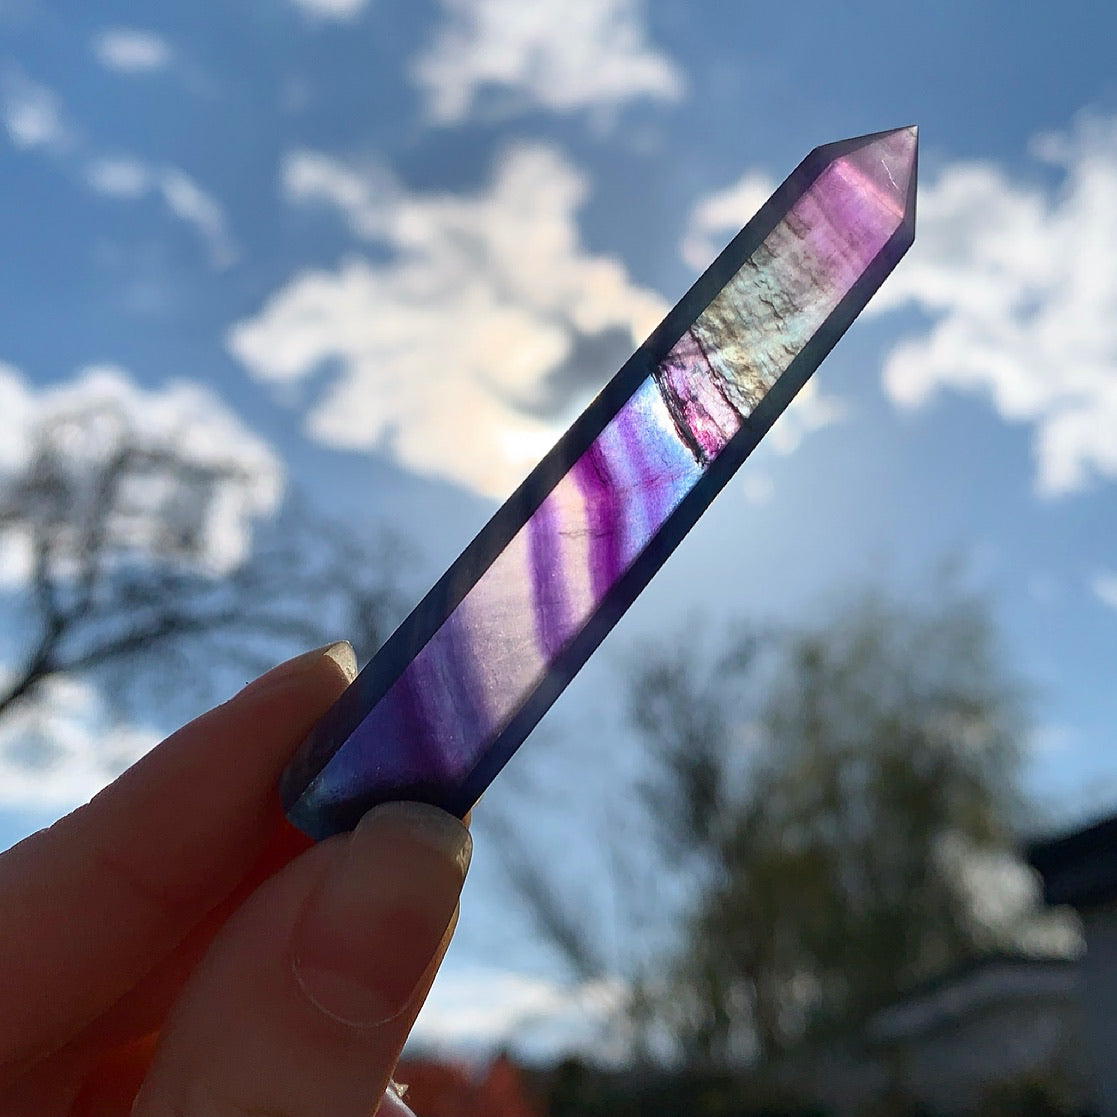 Rainbow Fluorite Crystal Points